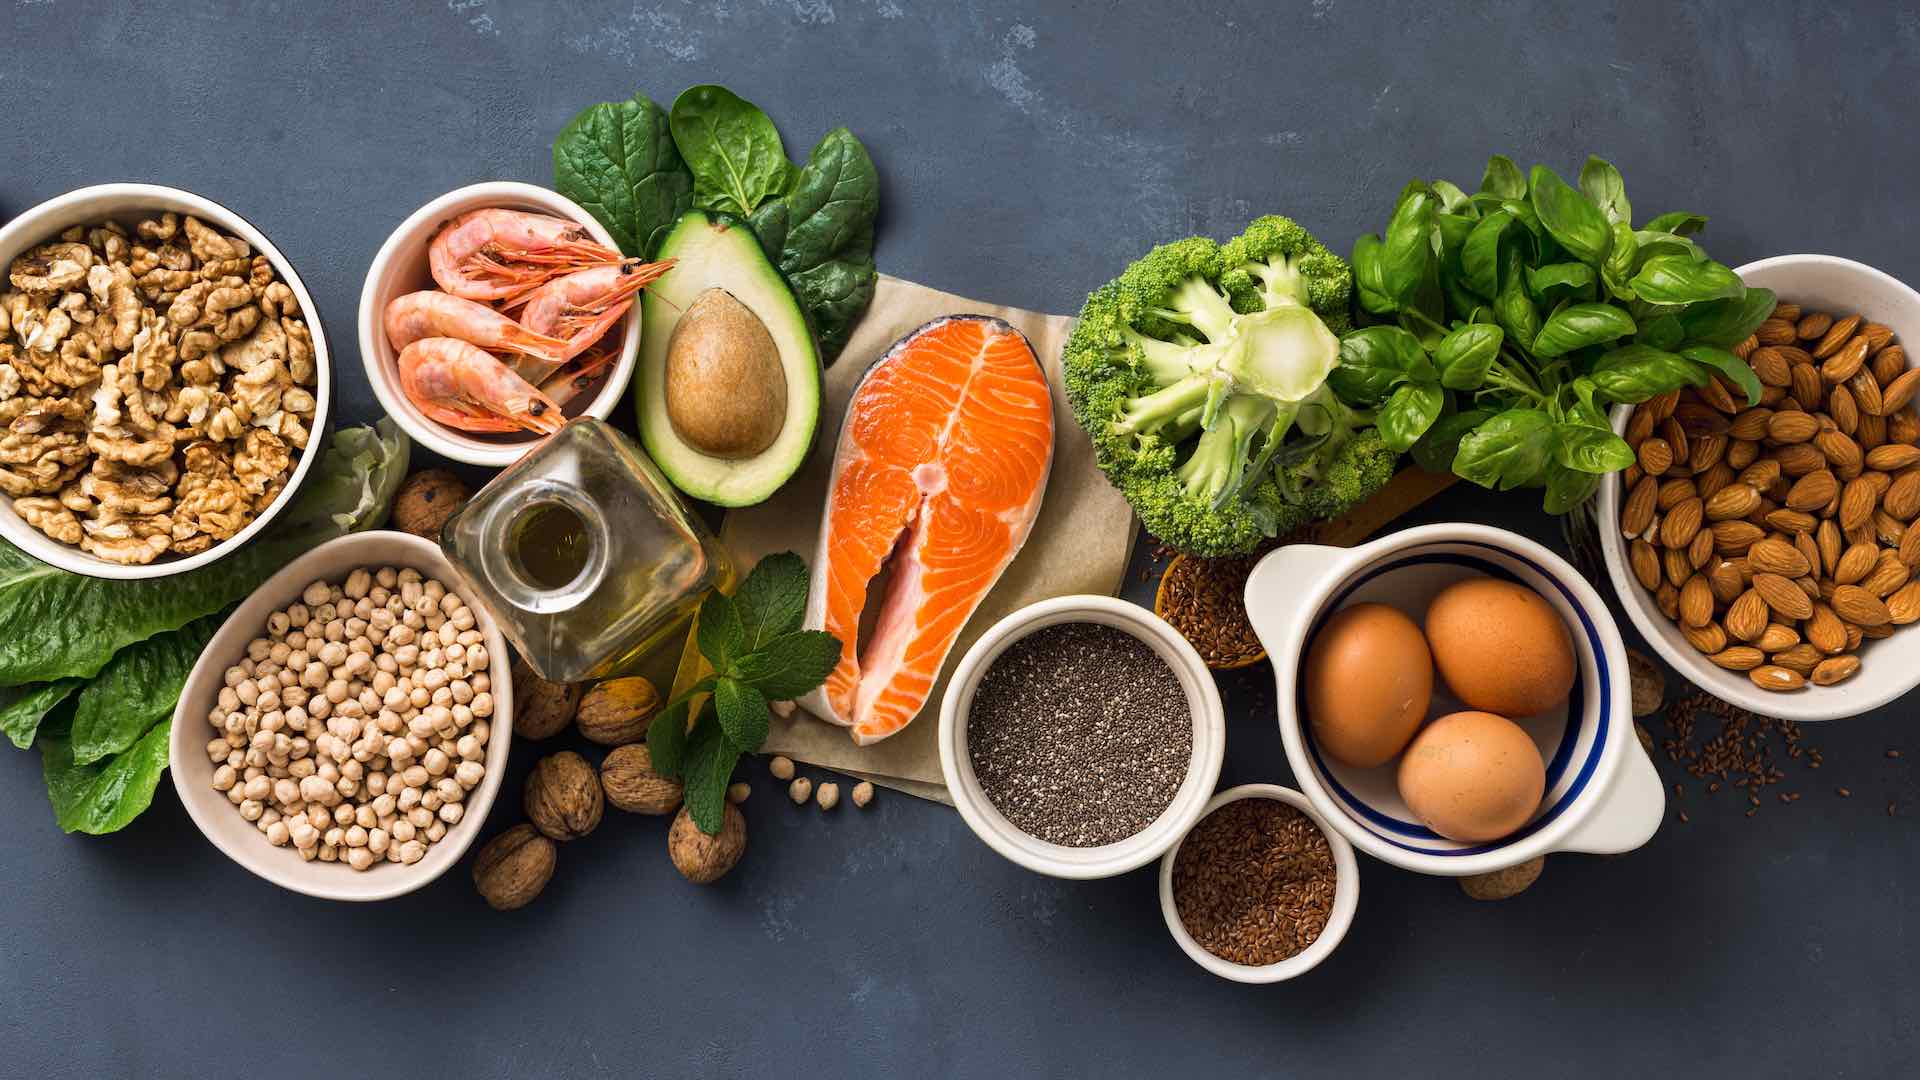 ہائی بلڈ پریشر کو نیویگیٹ کرنے میں بہتر صحت کے لیے پروٹین سے بھرے کھانے